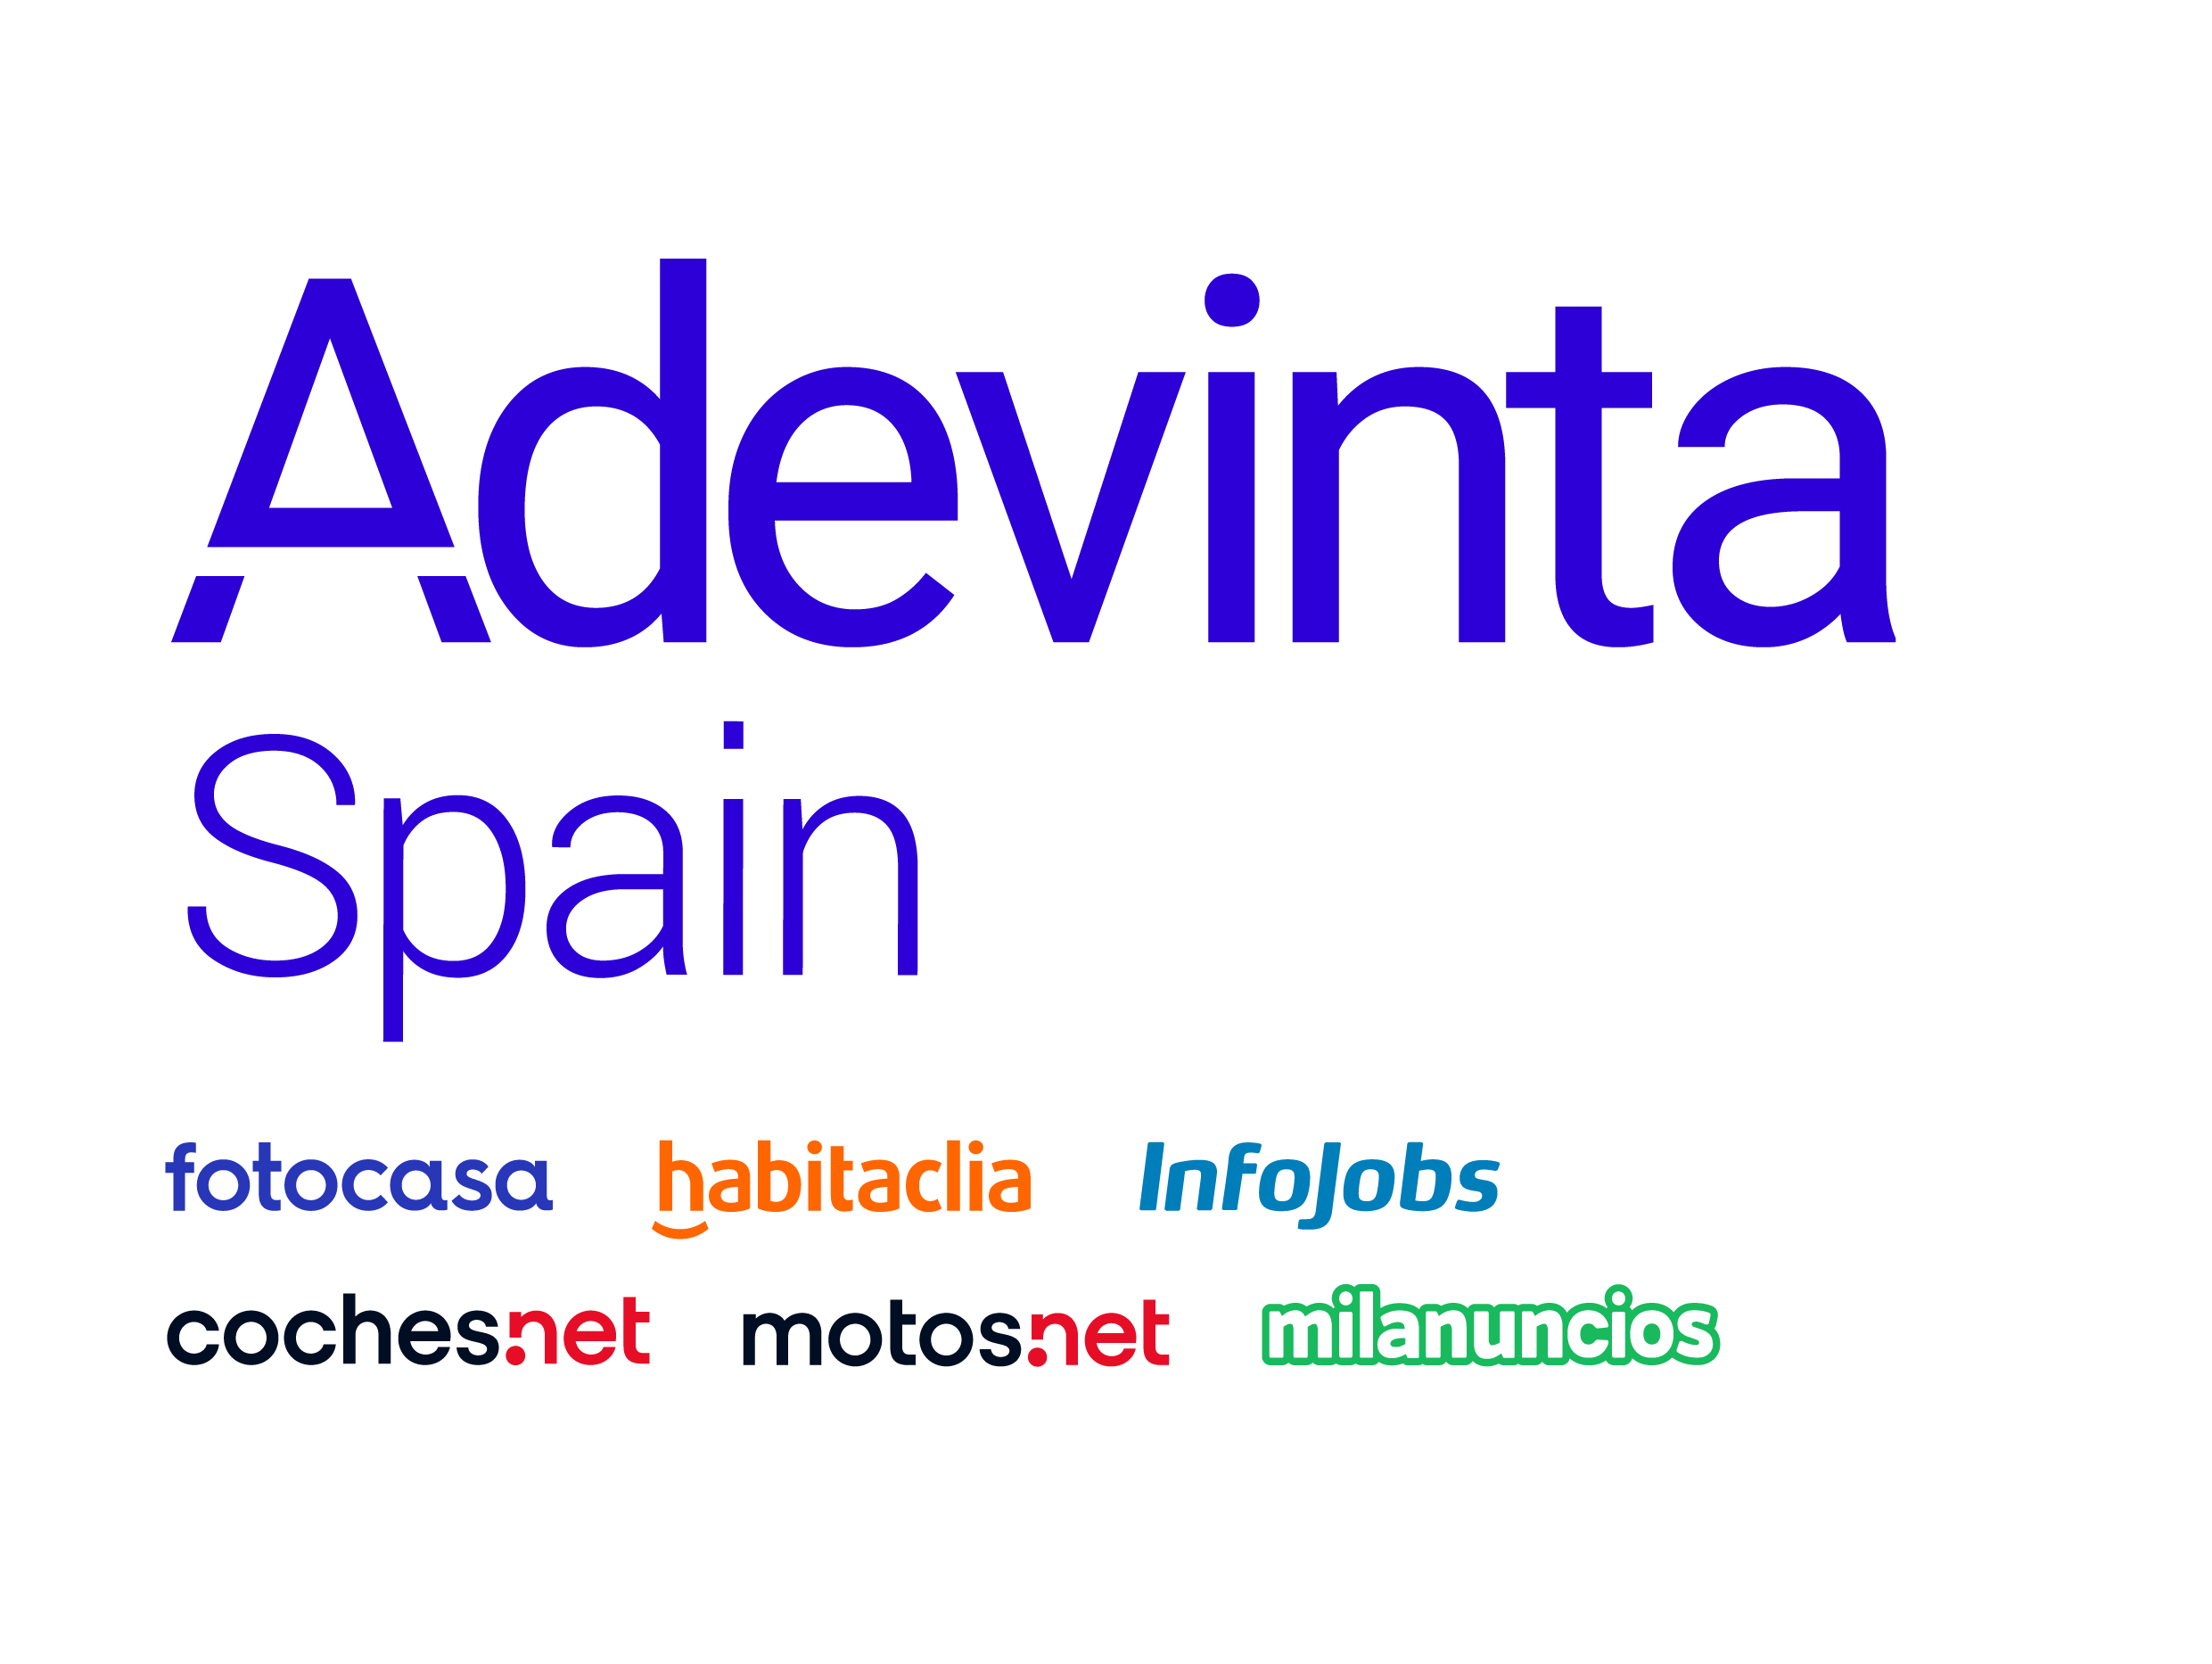 persona Todo el tiempo Tío o señor Adevinta Spain - Tech Barcelona